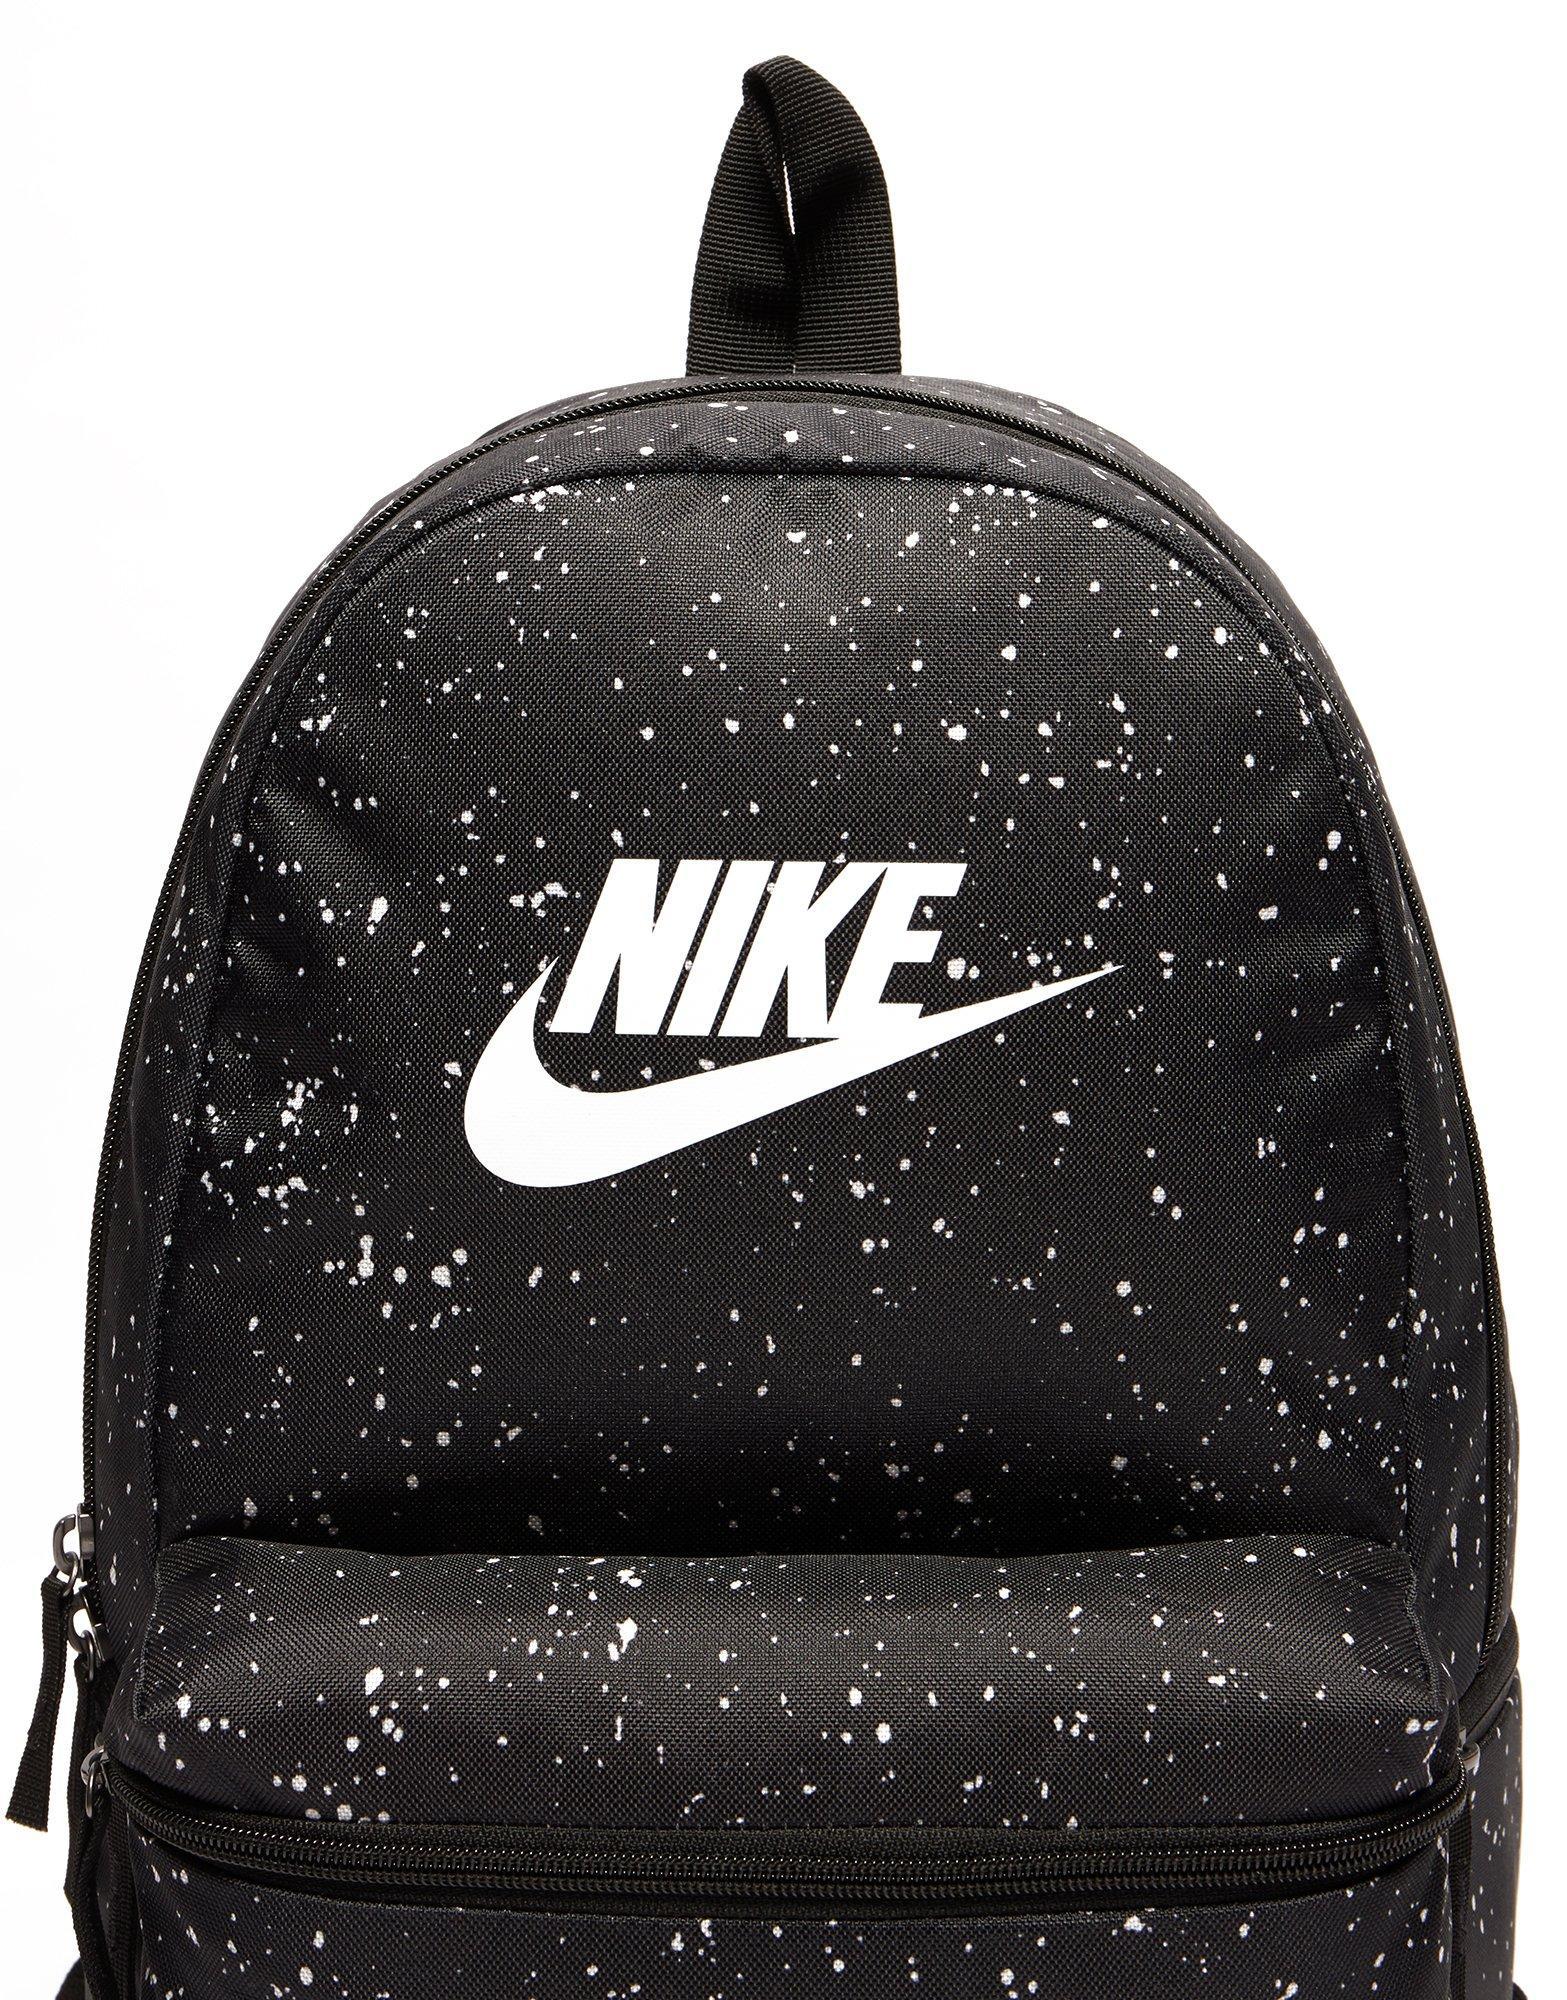 Nike Speckle Backpack Shop - jackiesnews.co.uk 1691086114